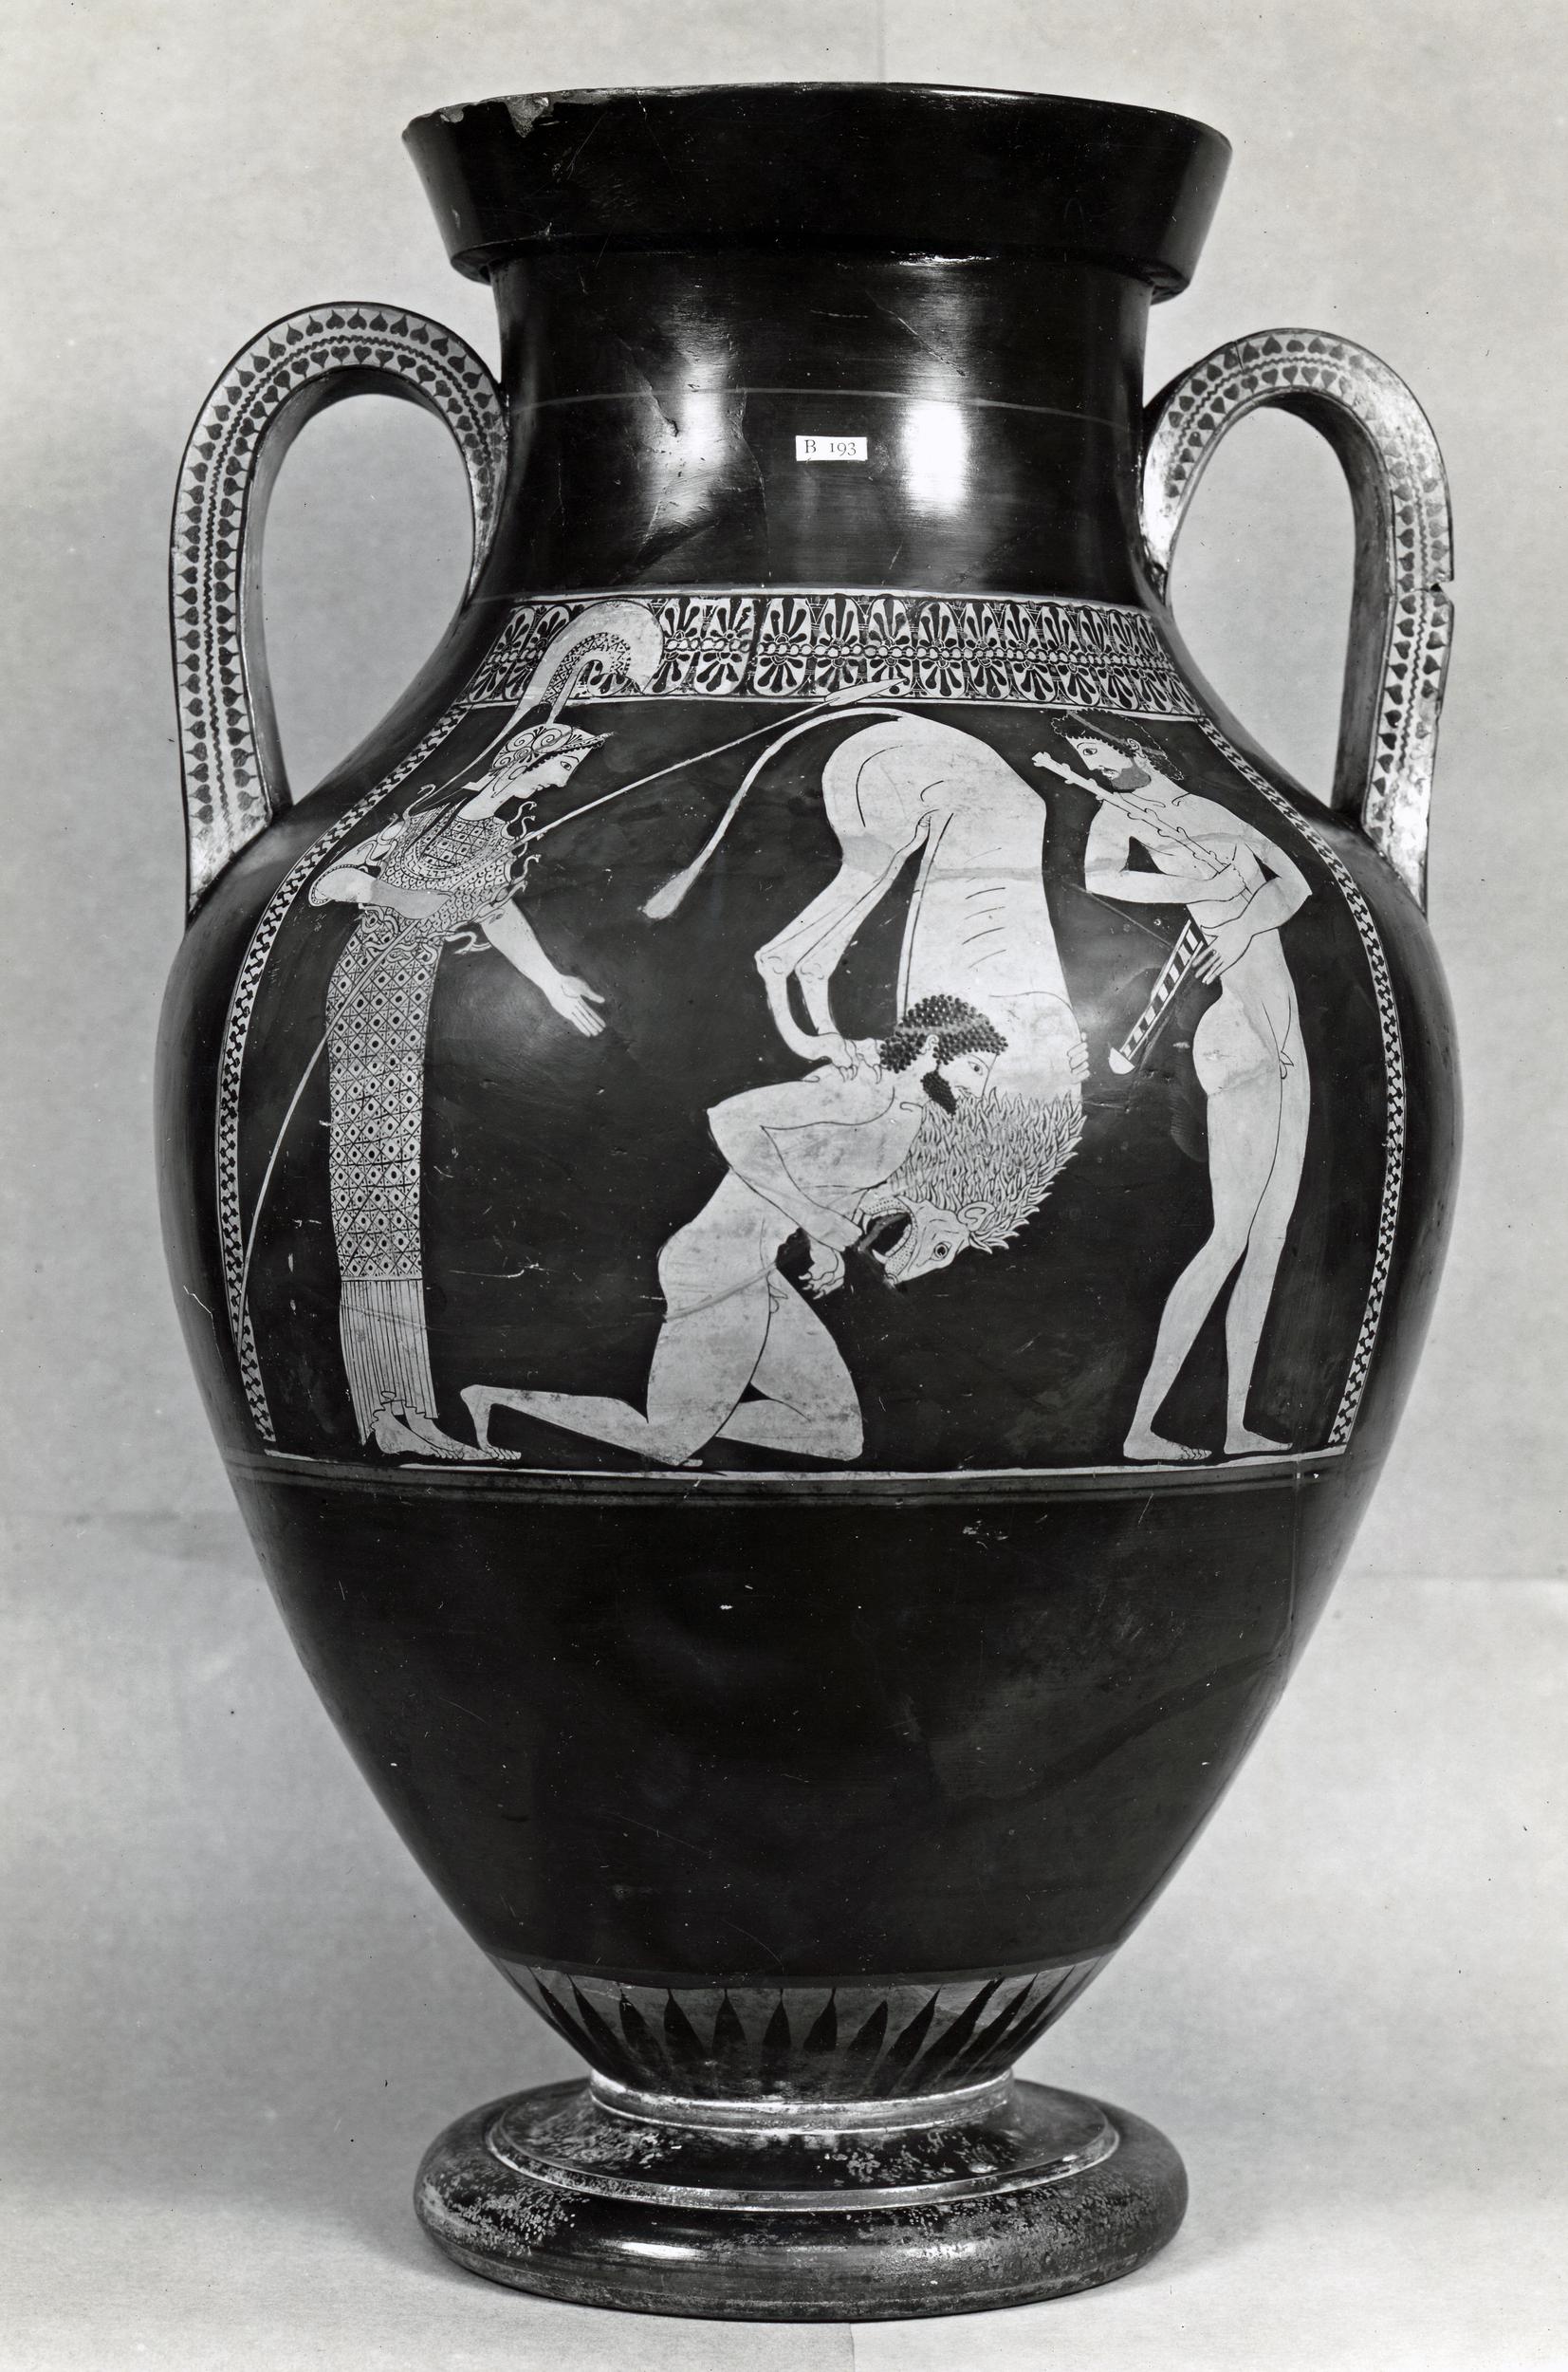 双彩绘双⽿瓶（赫拉克勒斯双⽿瓶）“Bilingual” Amphora